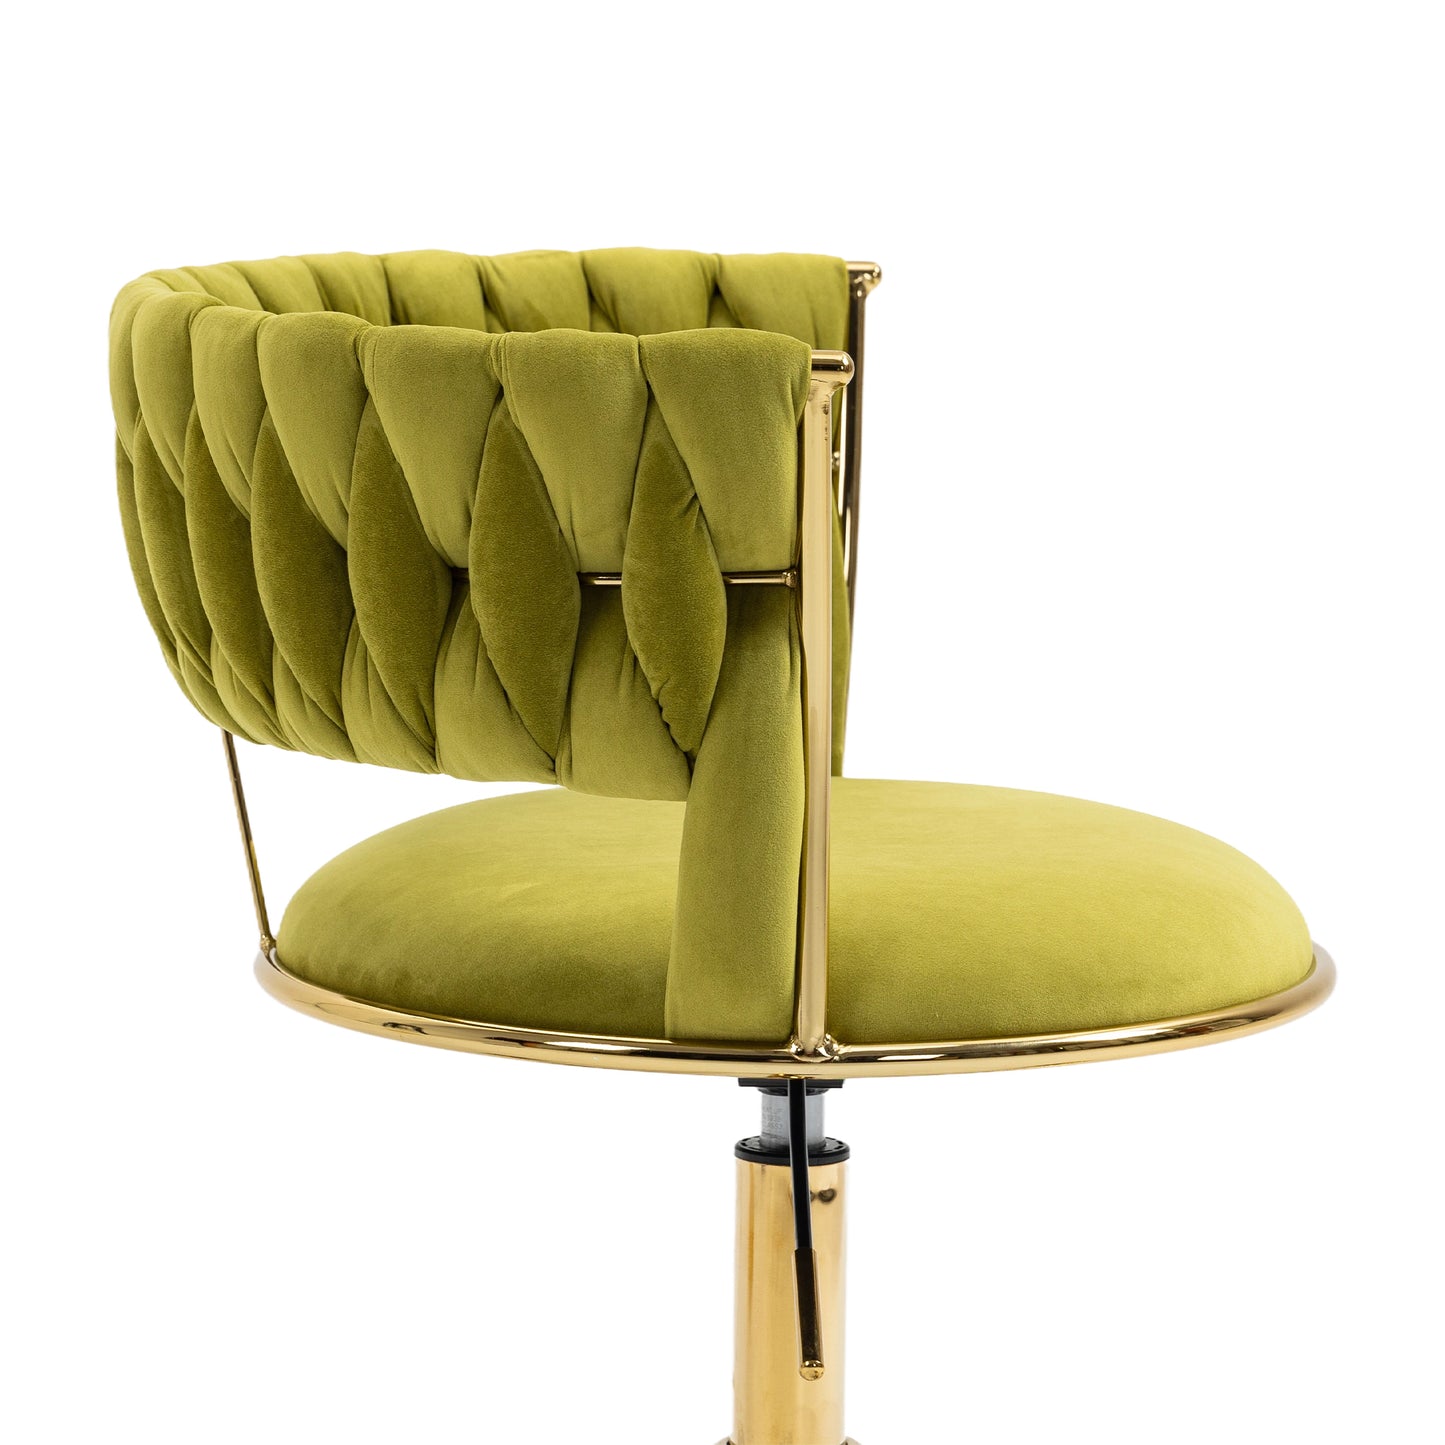 Olive Elegance: The COOLMORE Desk Chair